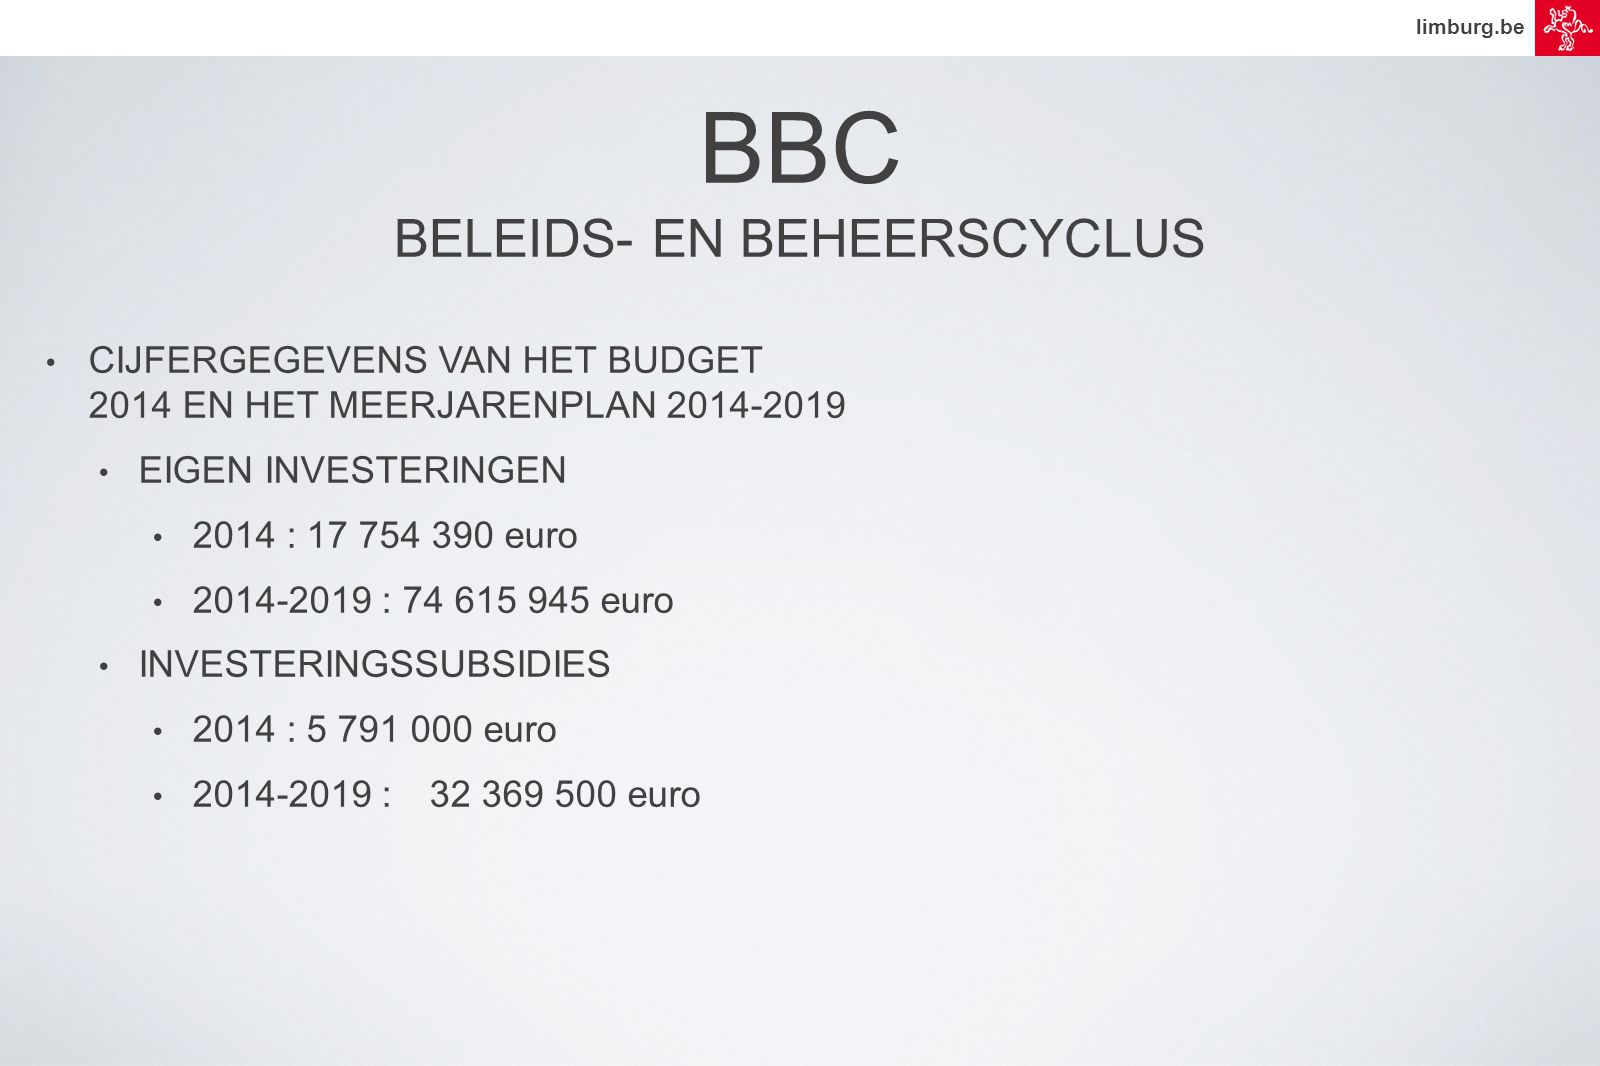 limburg.be • CIJFERGEGEVENS VAN HET BUDGET 2014 EN HET MEERJARENPLAN • EIGEN INVESTERINGEN • 2014 : euro • : euro • INVESTERINGSSUBSIDIES • 2014 : euro • : euro BBC BELEIDS- EN BEHEERSCYCLUS